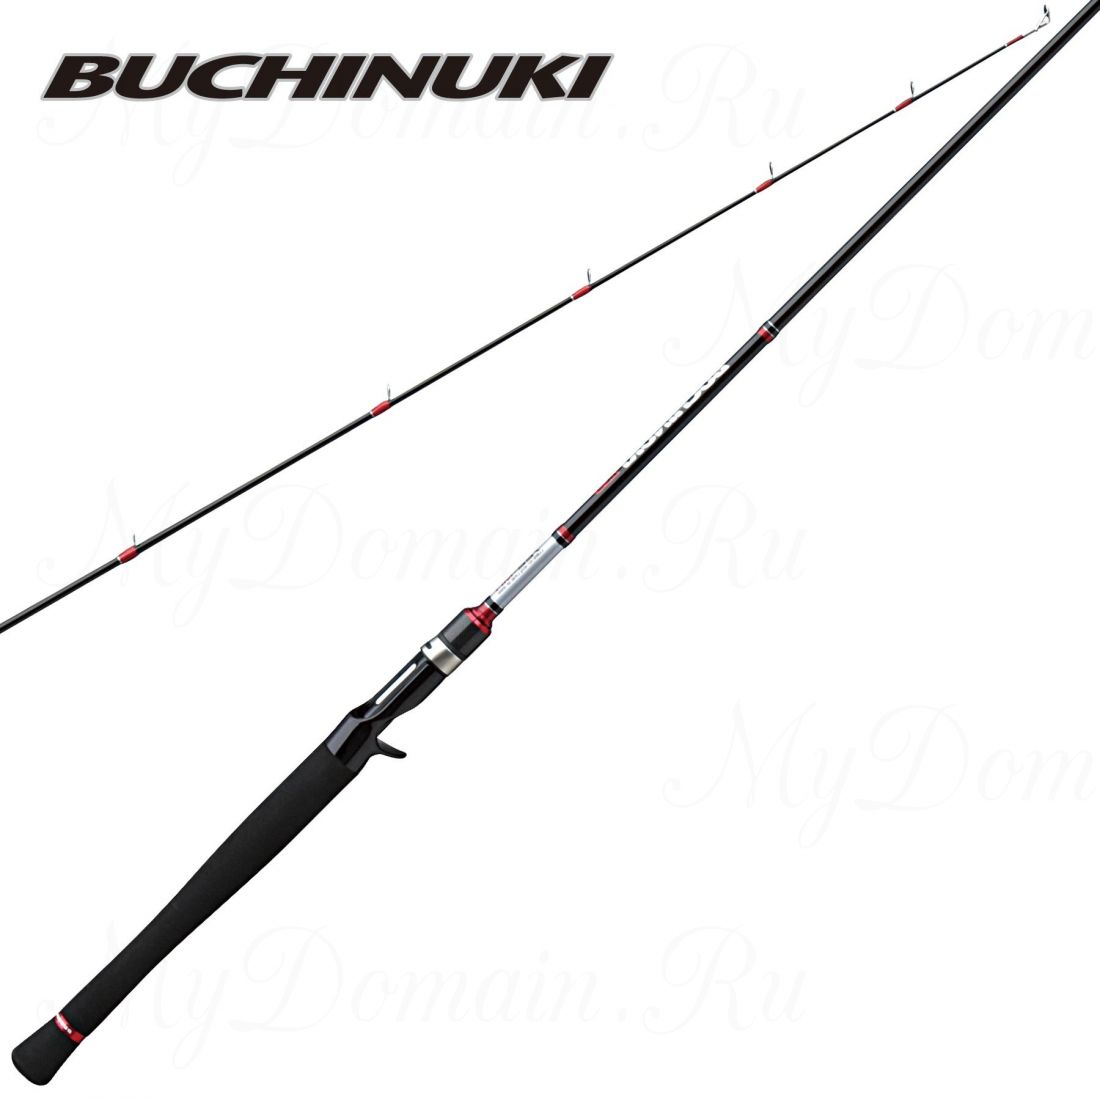 Удилище кастинговое Prox Buchinuki BC-X 662M 200 cм, 2 секции, 7-28 гр, вес 138 гр, транспортная длина 104 см.